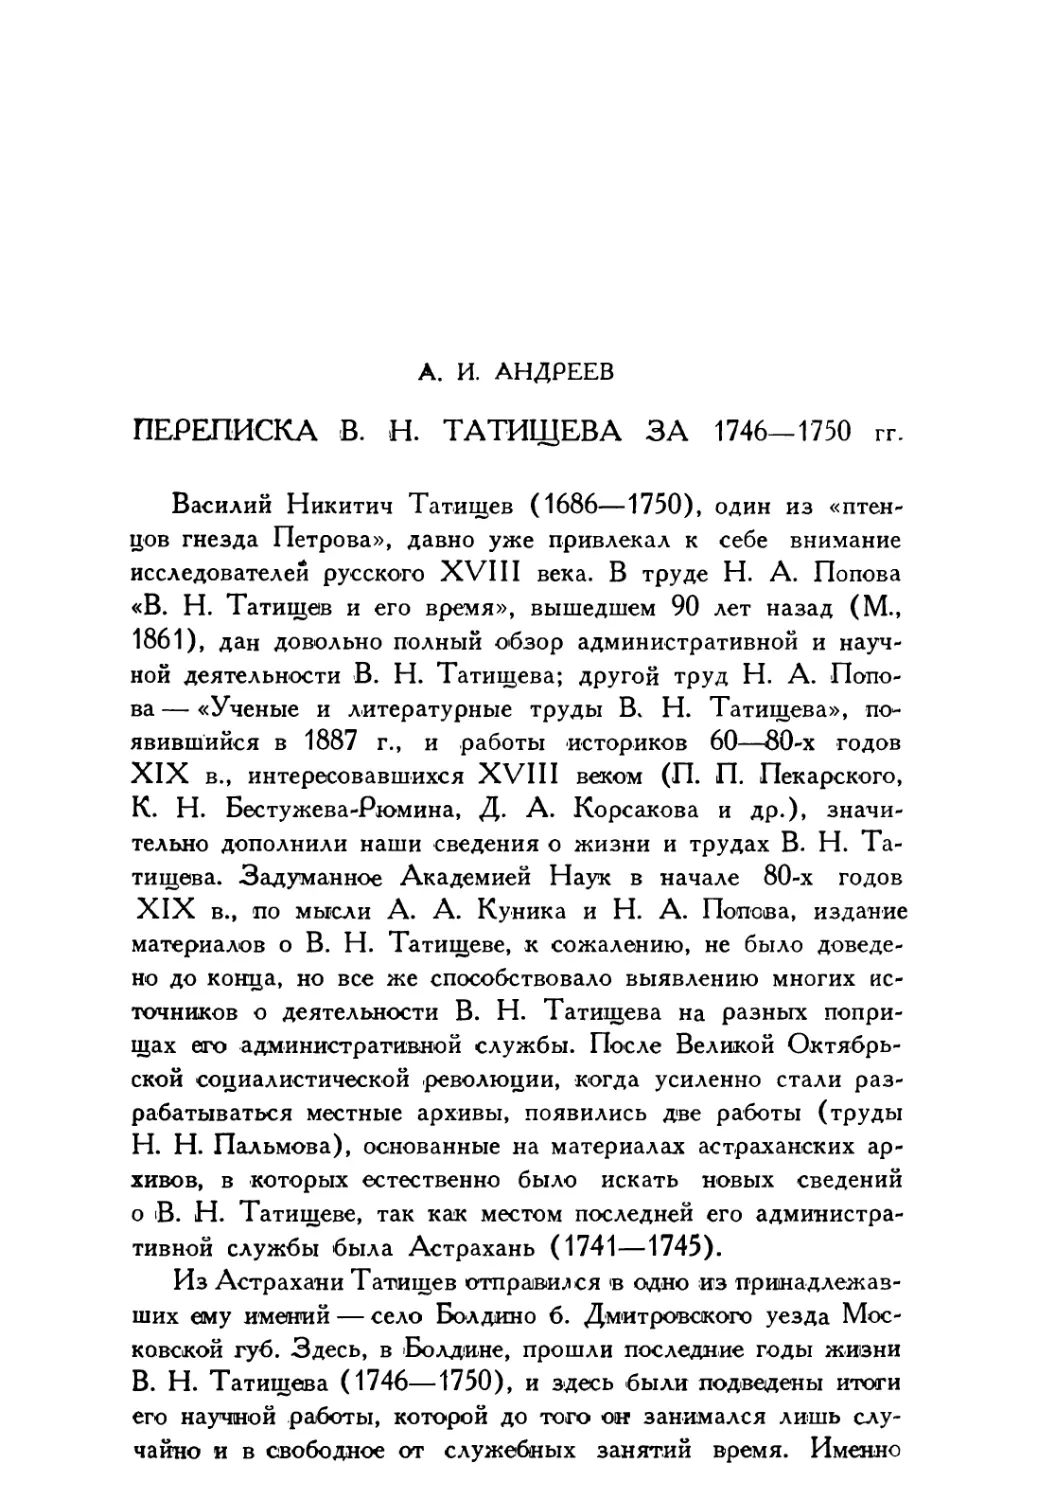 А.И. Андреев. Переписка В.Н. Татищева за 1746—1750 гг